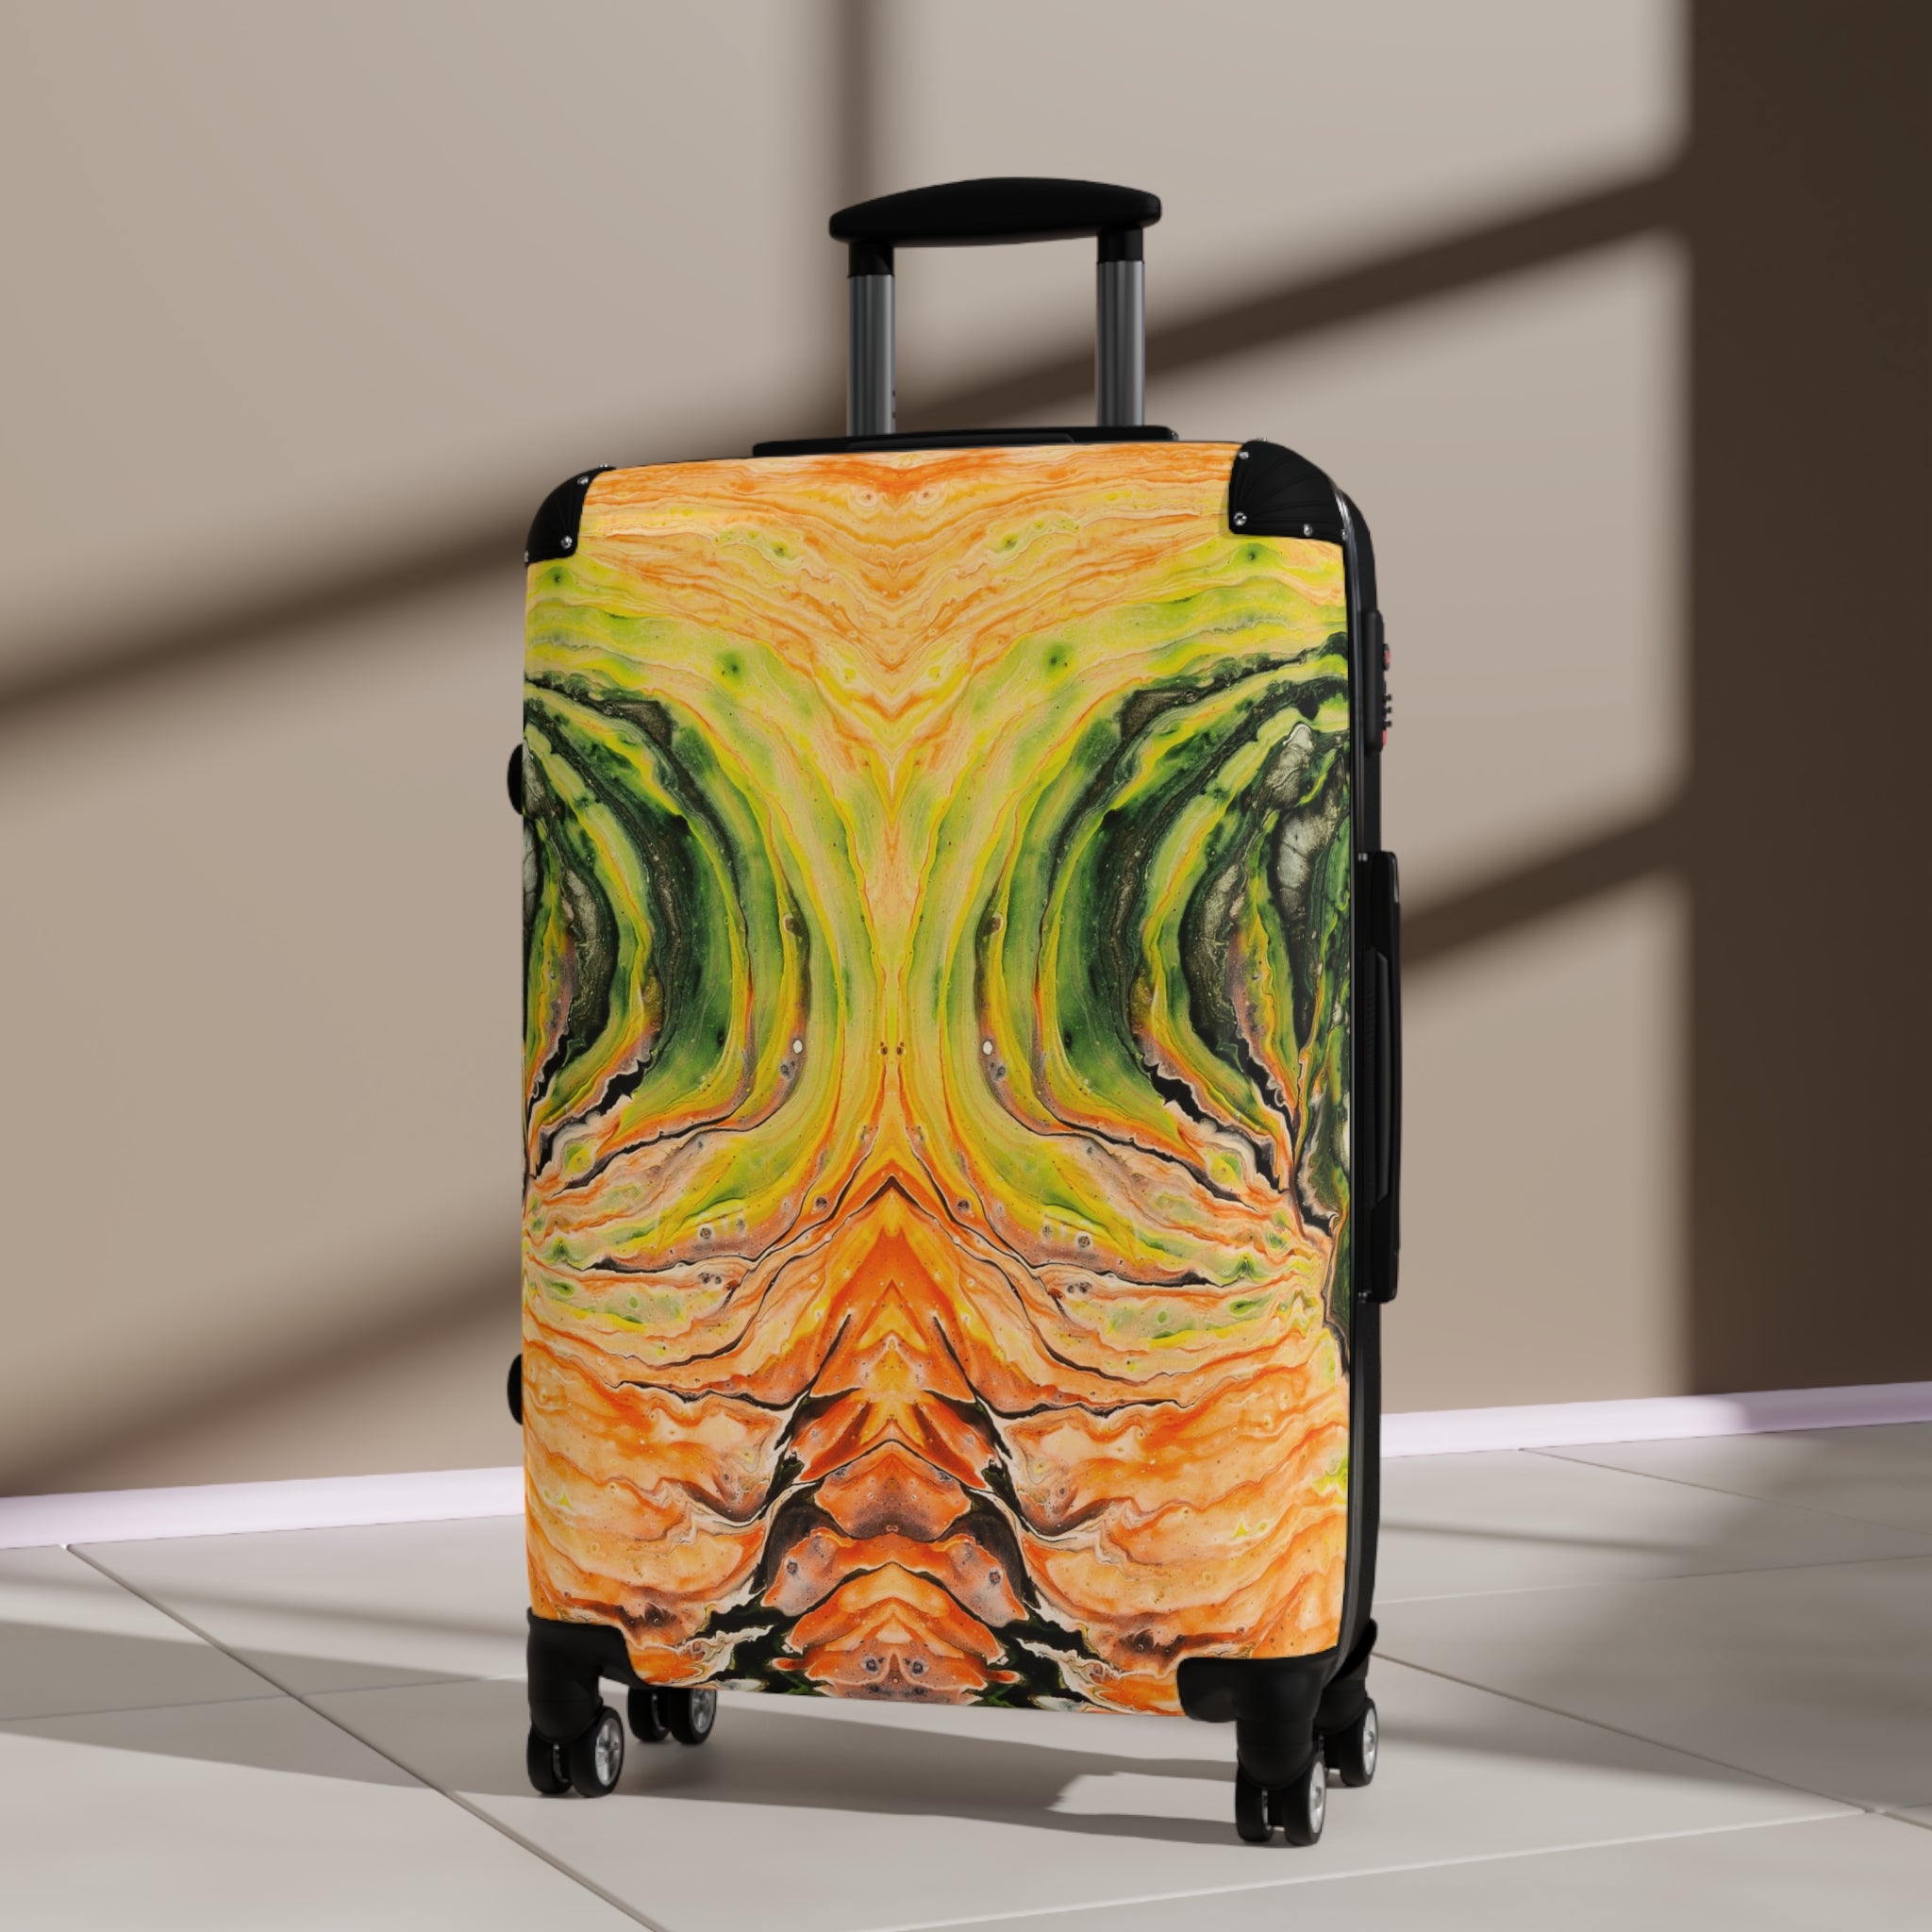 Suitcase - Vortex Of Fire